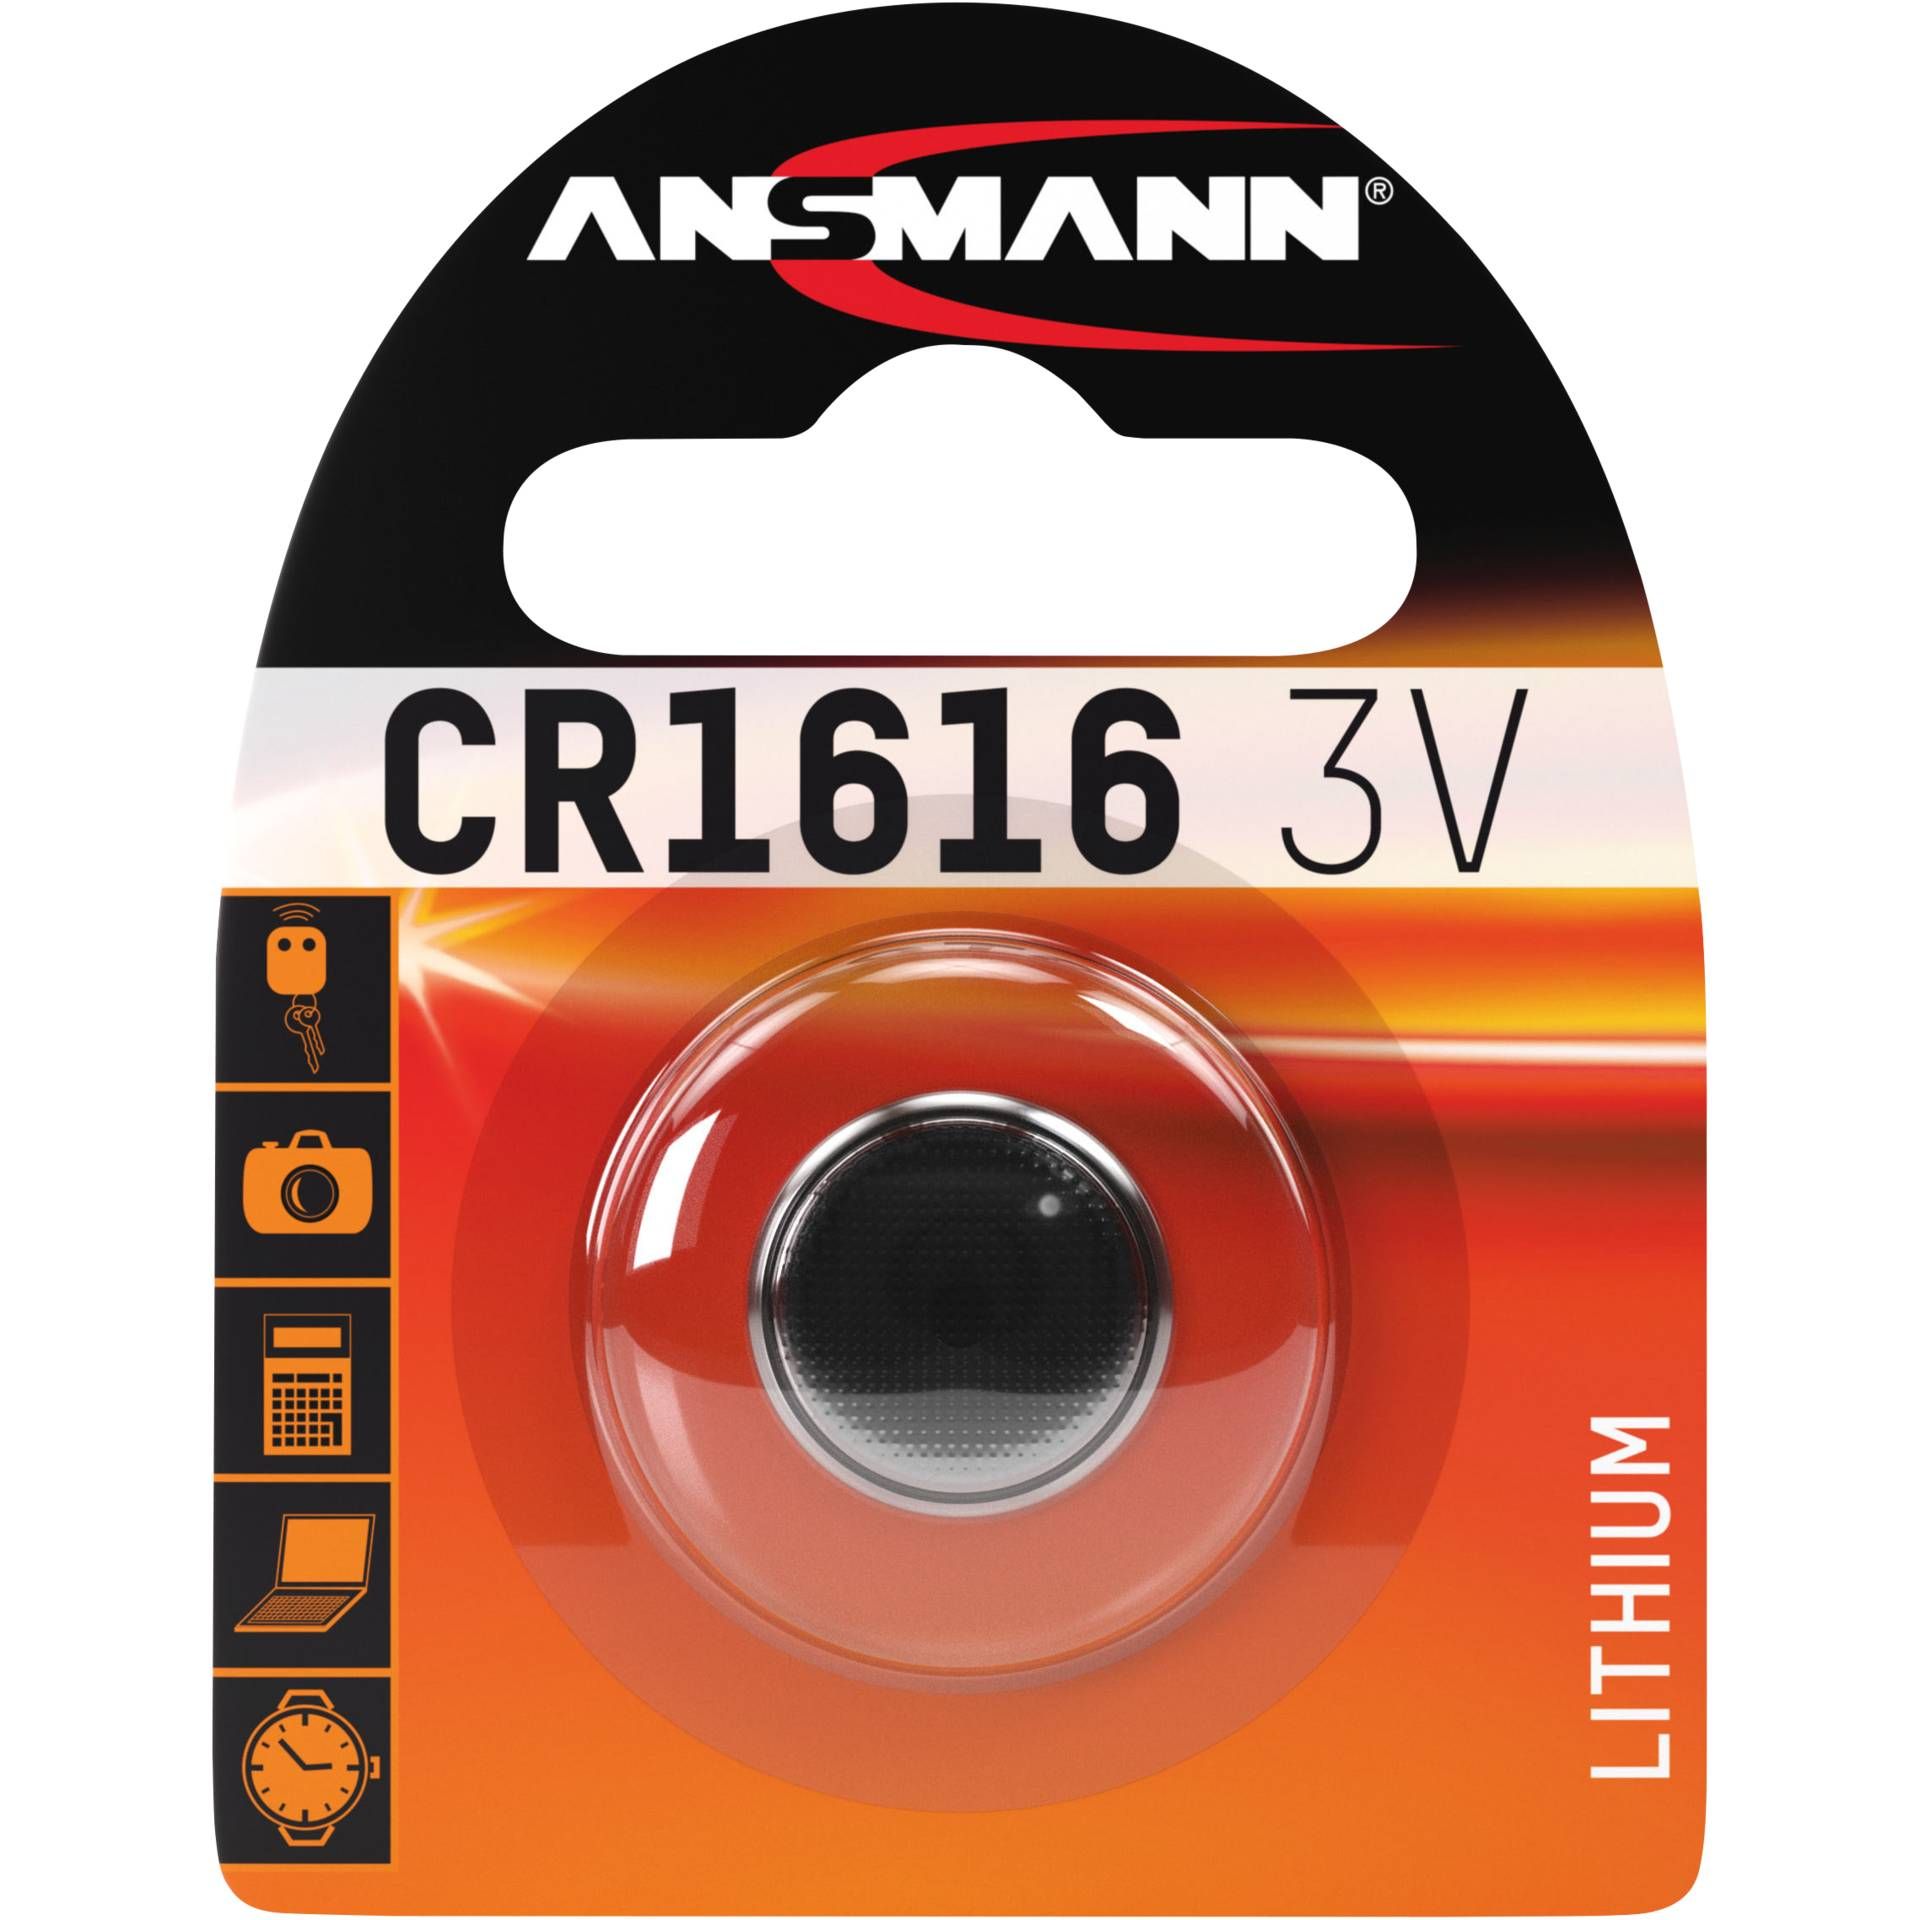 Ansmann CR 1616